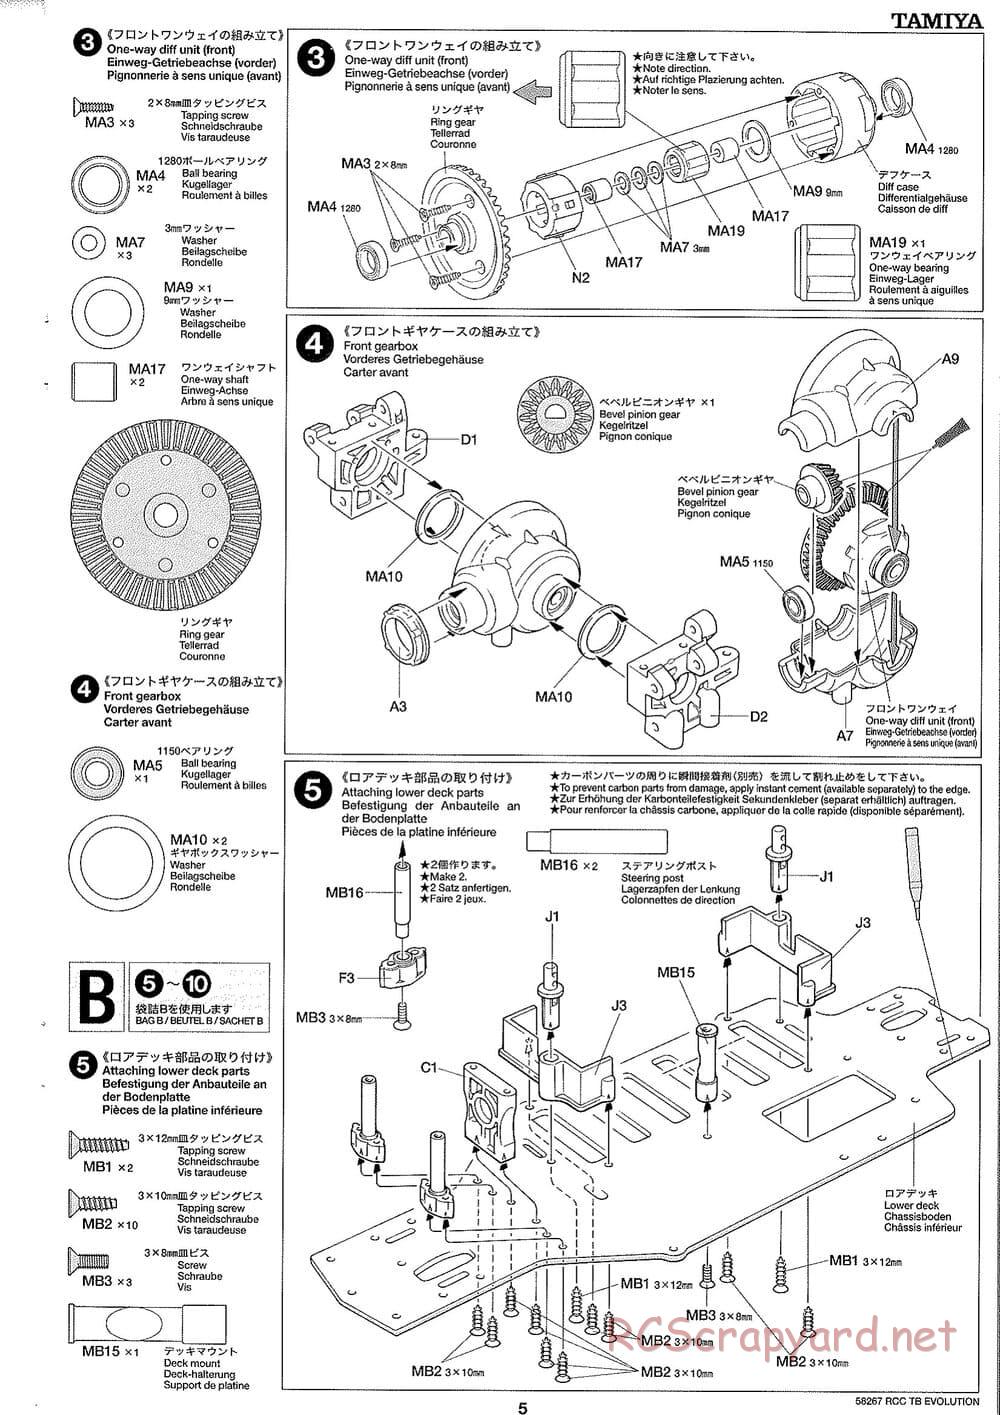 Tamiya - TB Evolution Chassis - Manual - Page 5